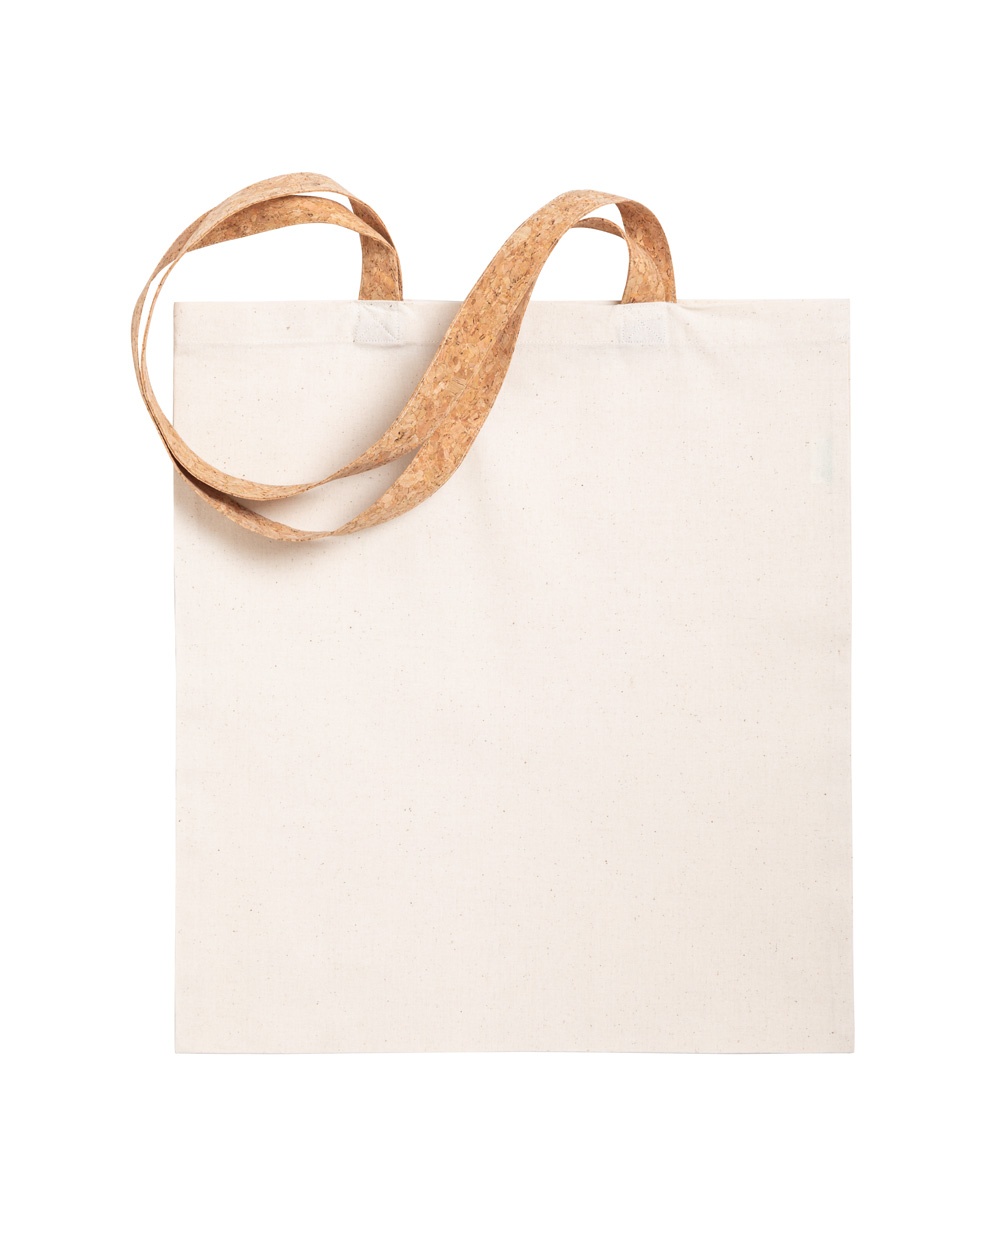 Cotton shopping bag YULIA with cork handles - natural